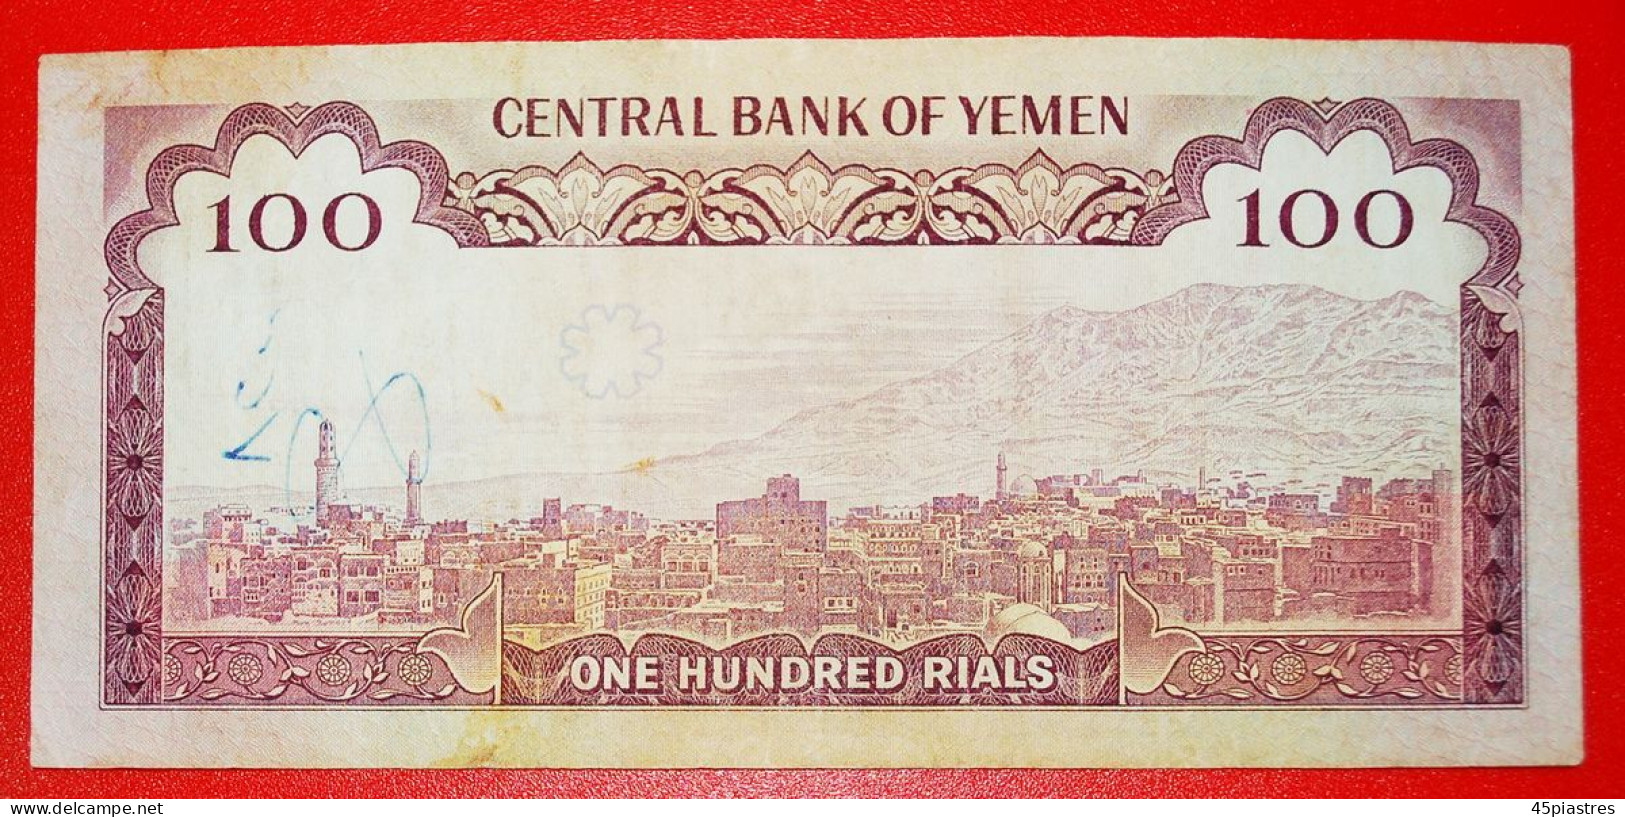 &#9733;MOSQUE: YEMEN &#9733; 100 RIALS (1979)! UNCOMMON! LOW START &#9733; NO RESERVE! - Yémen